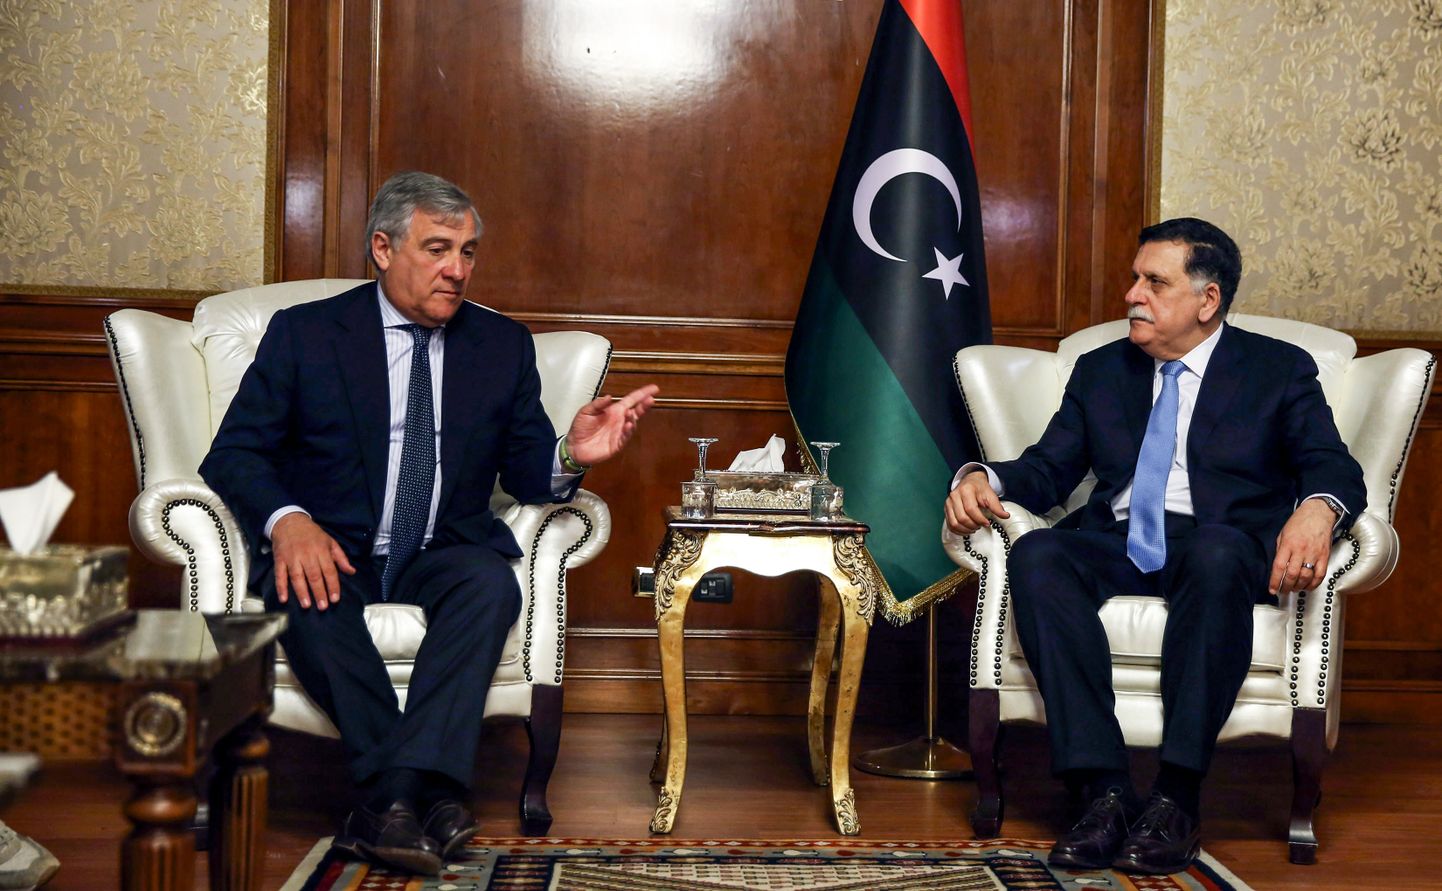 European Parliament president Antonio Tajani peab Tripolis kõnelusi Liibüa ühtsusvalitsuse peaministri Fayez al-Sarrajga.